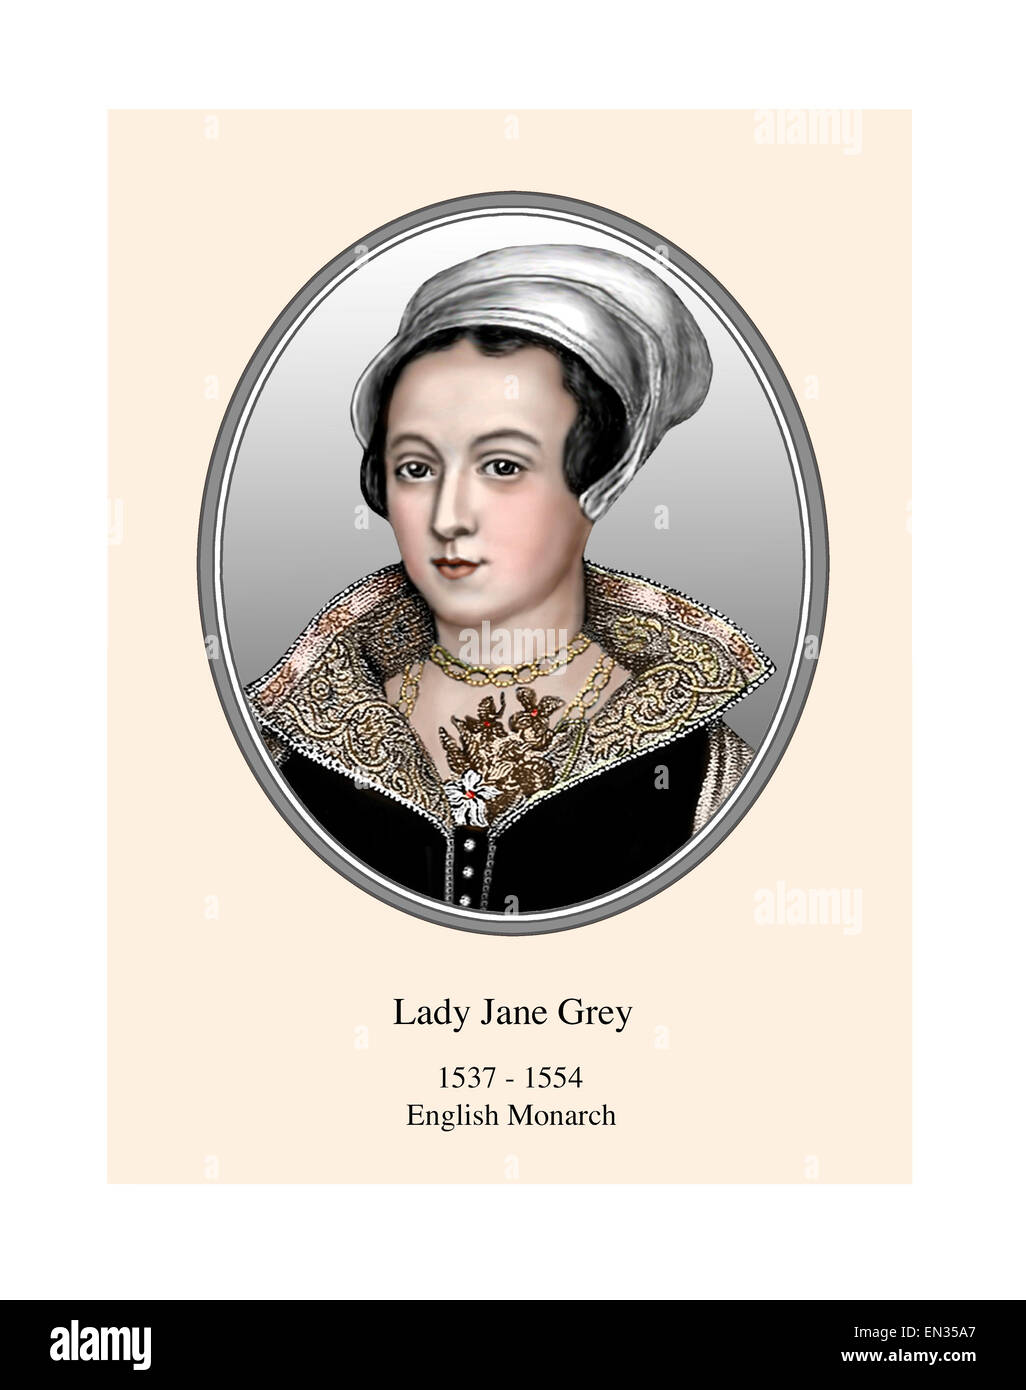 Lady Jane Grey monarca Inglés 9 día reina retrato ILUSTRACIÓN MODERNA Foto de stock